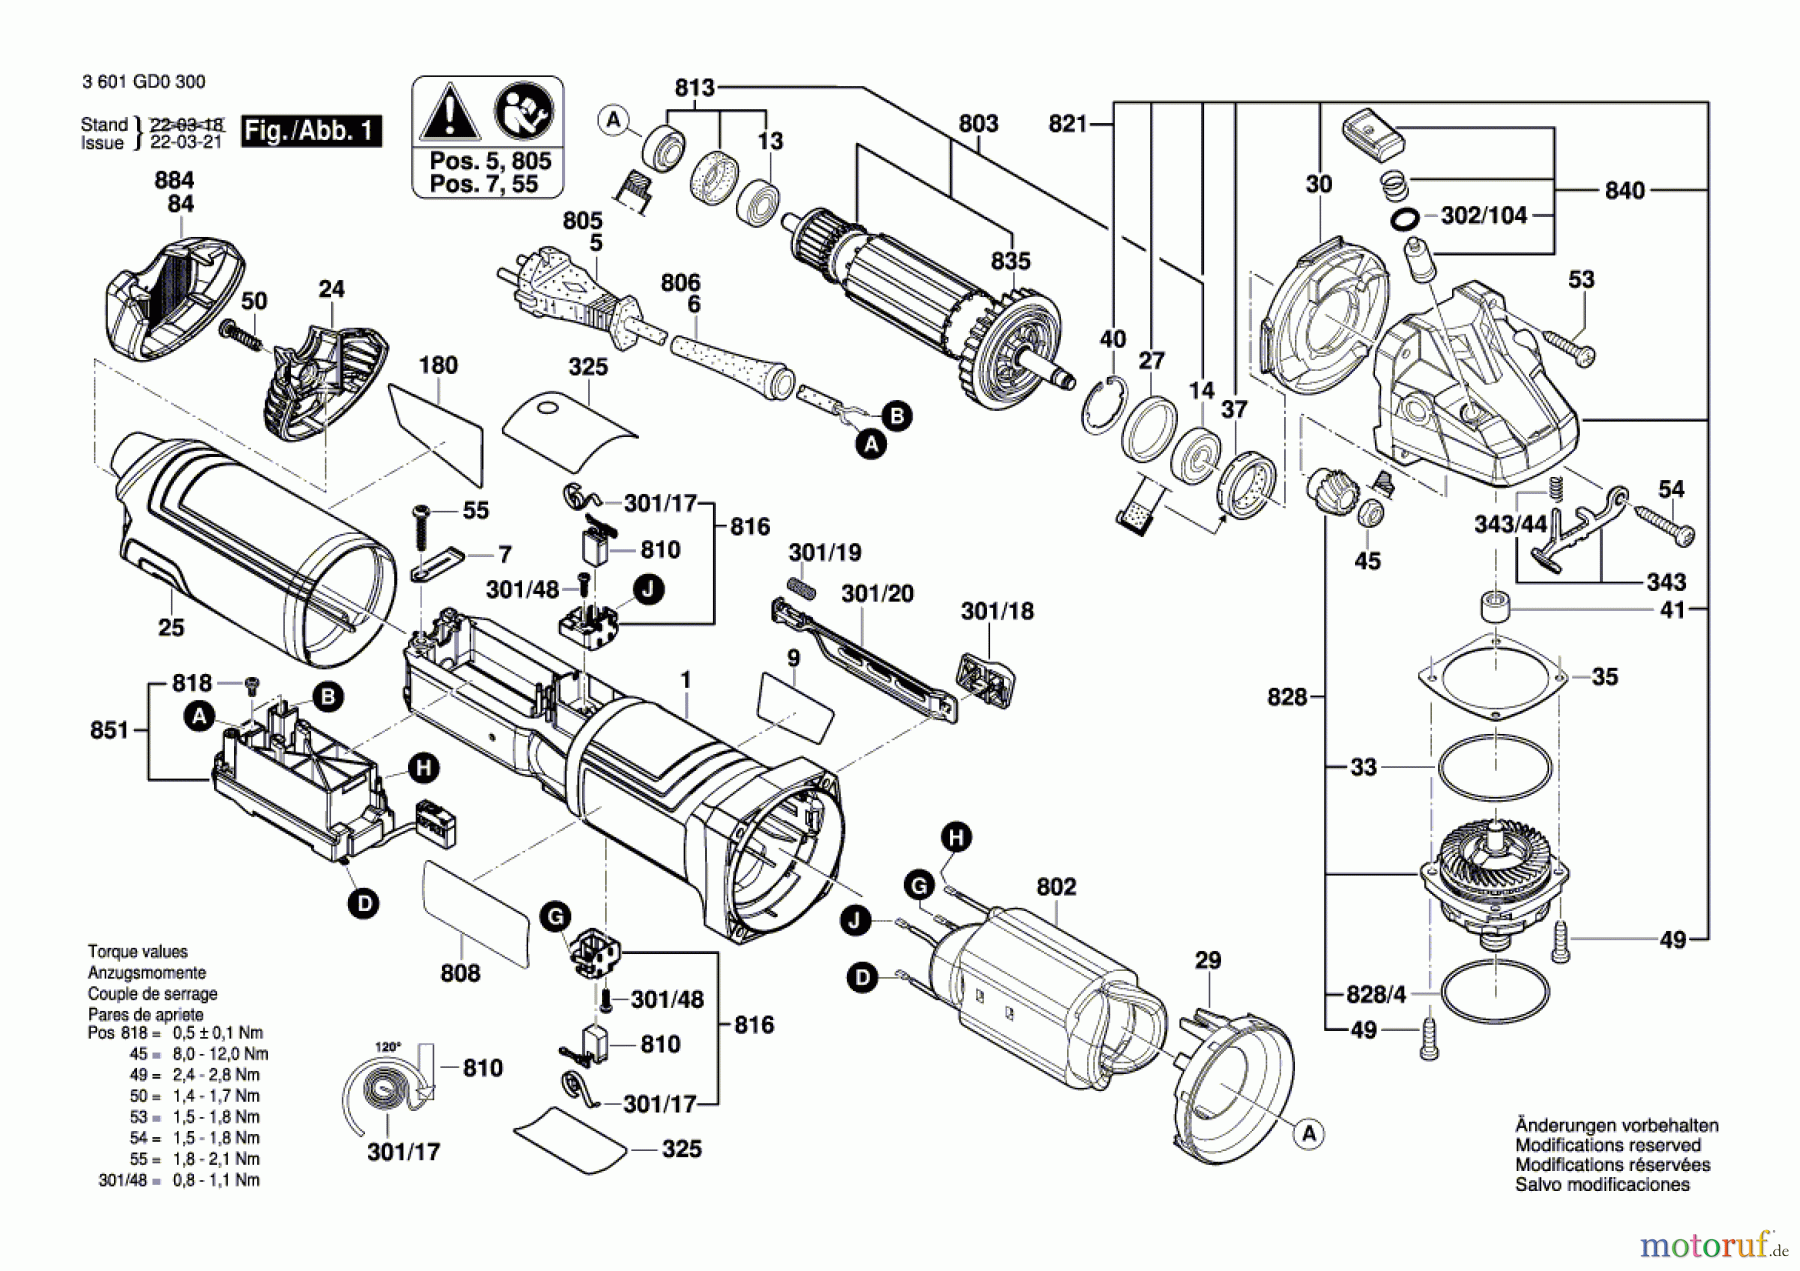  Bosch Werkzeug Winkelschleifer GWS 17-125 S INOX Seite 1